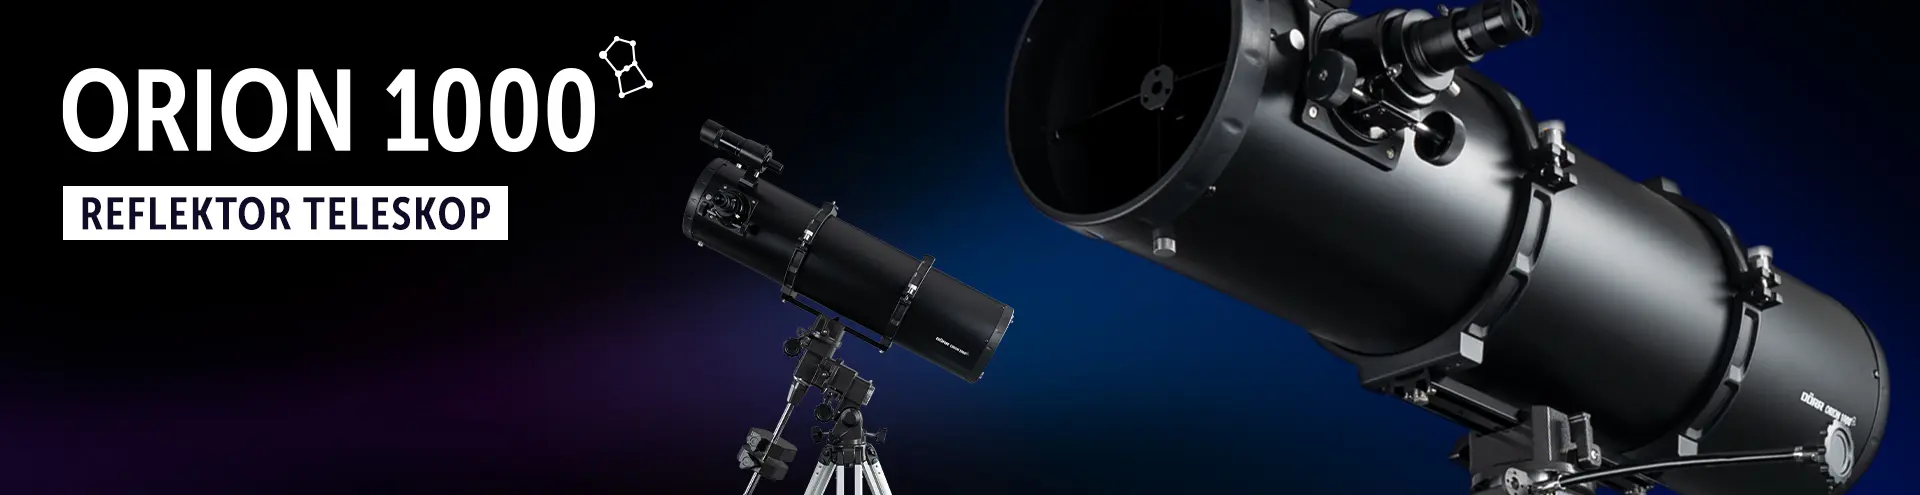 Reflektor Teleskop ORION 1000 von DÖRR | Entdecken Sie die Schönheit des Universums